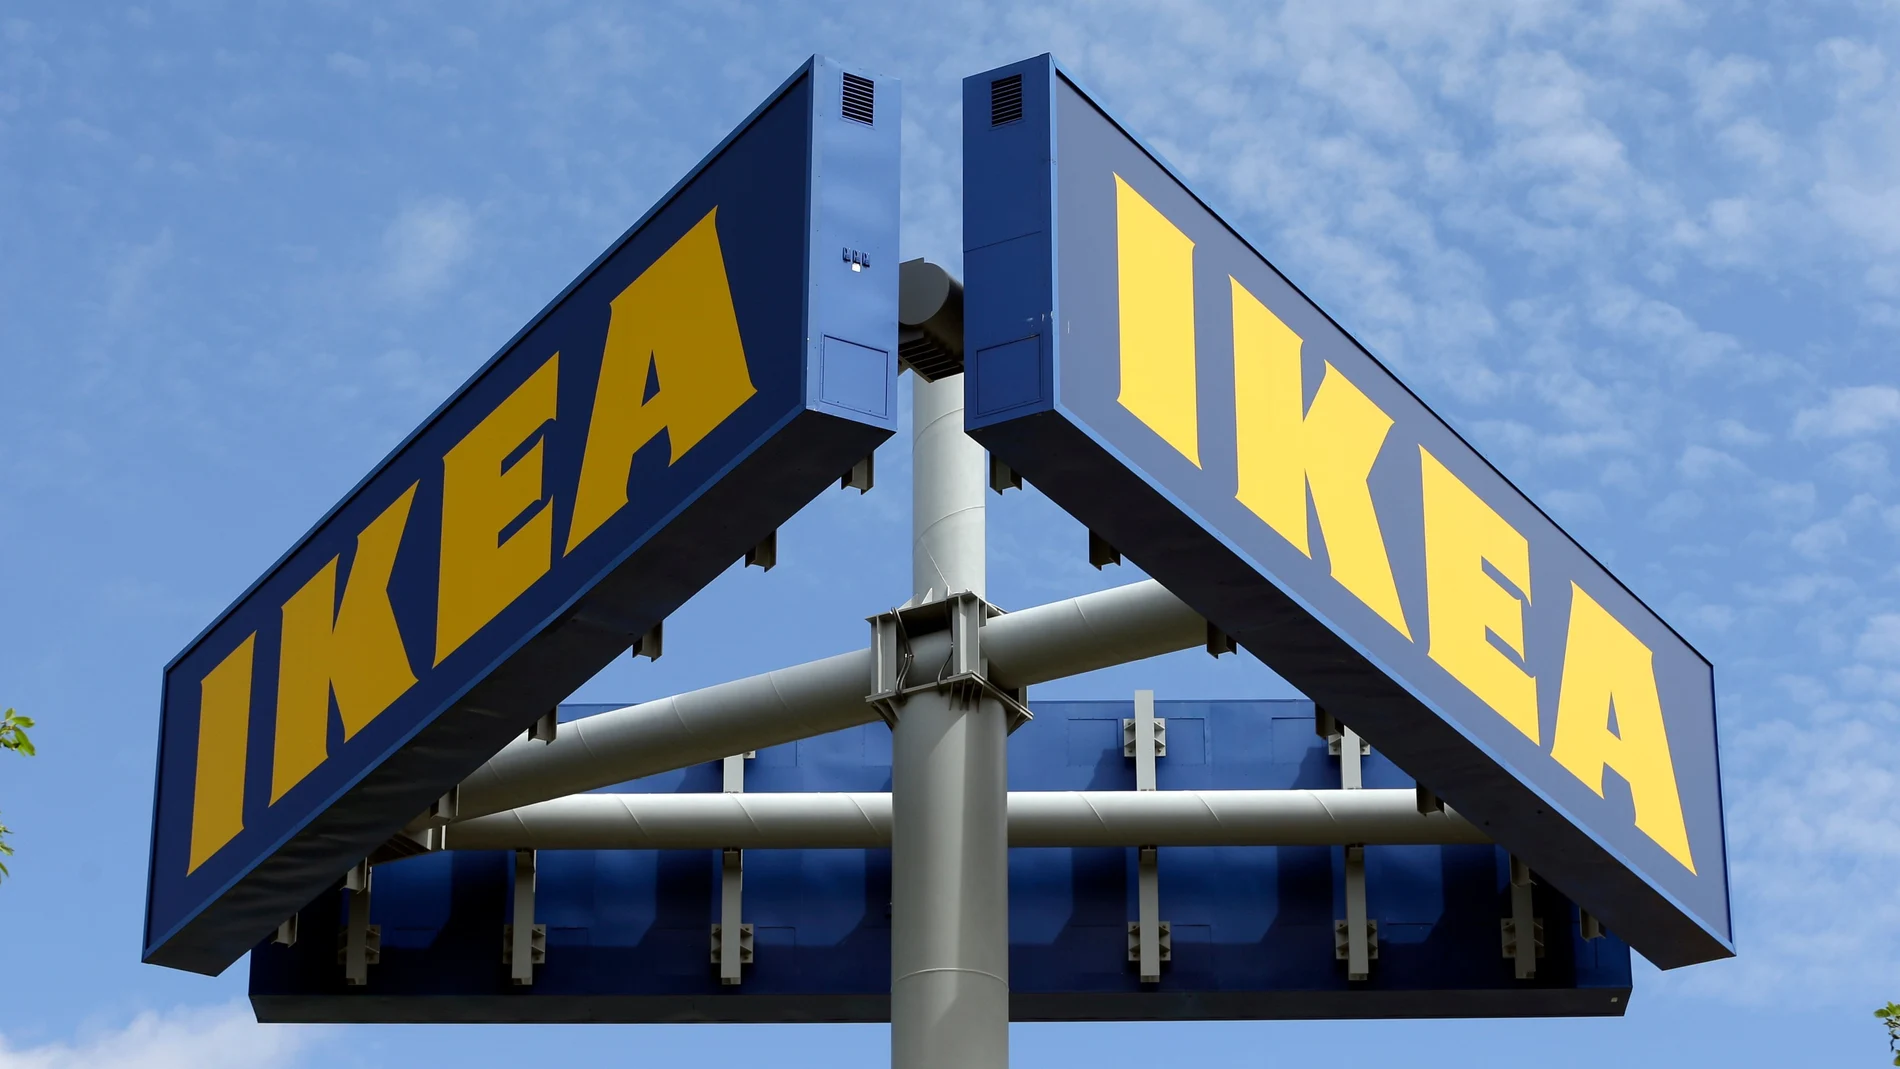 Logo de Ikea en una de sus tiendas